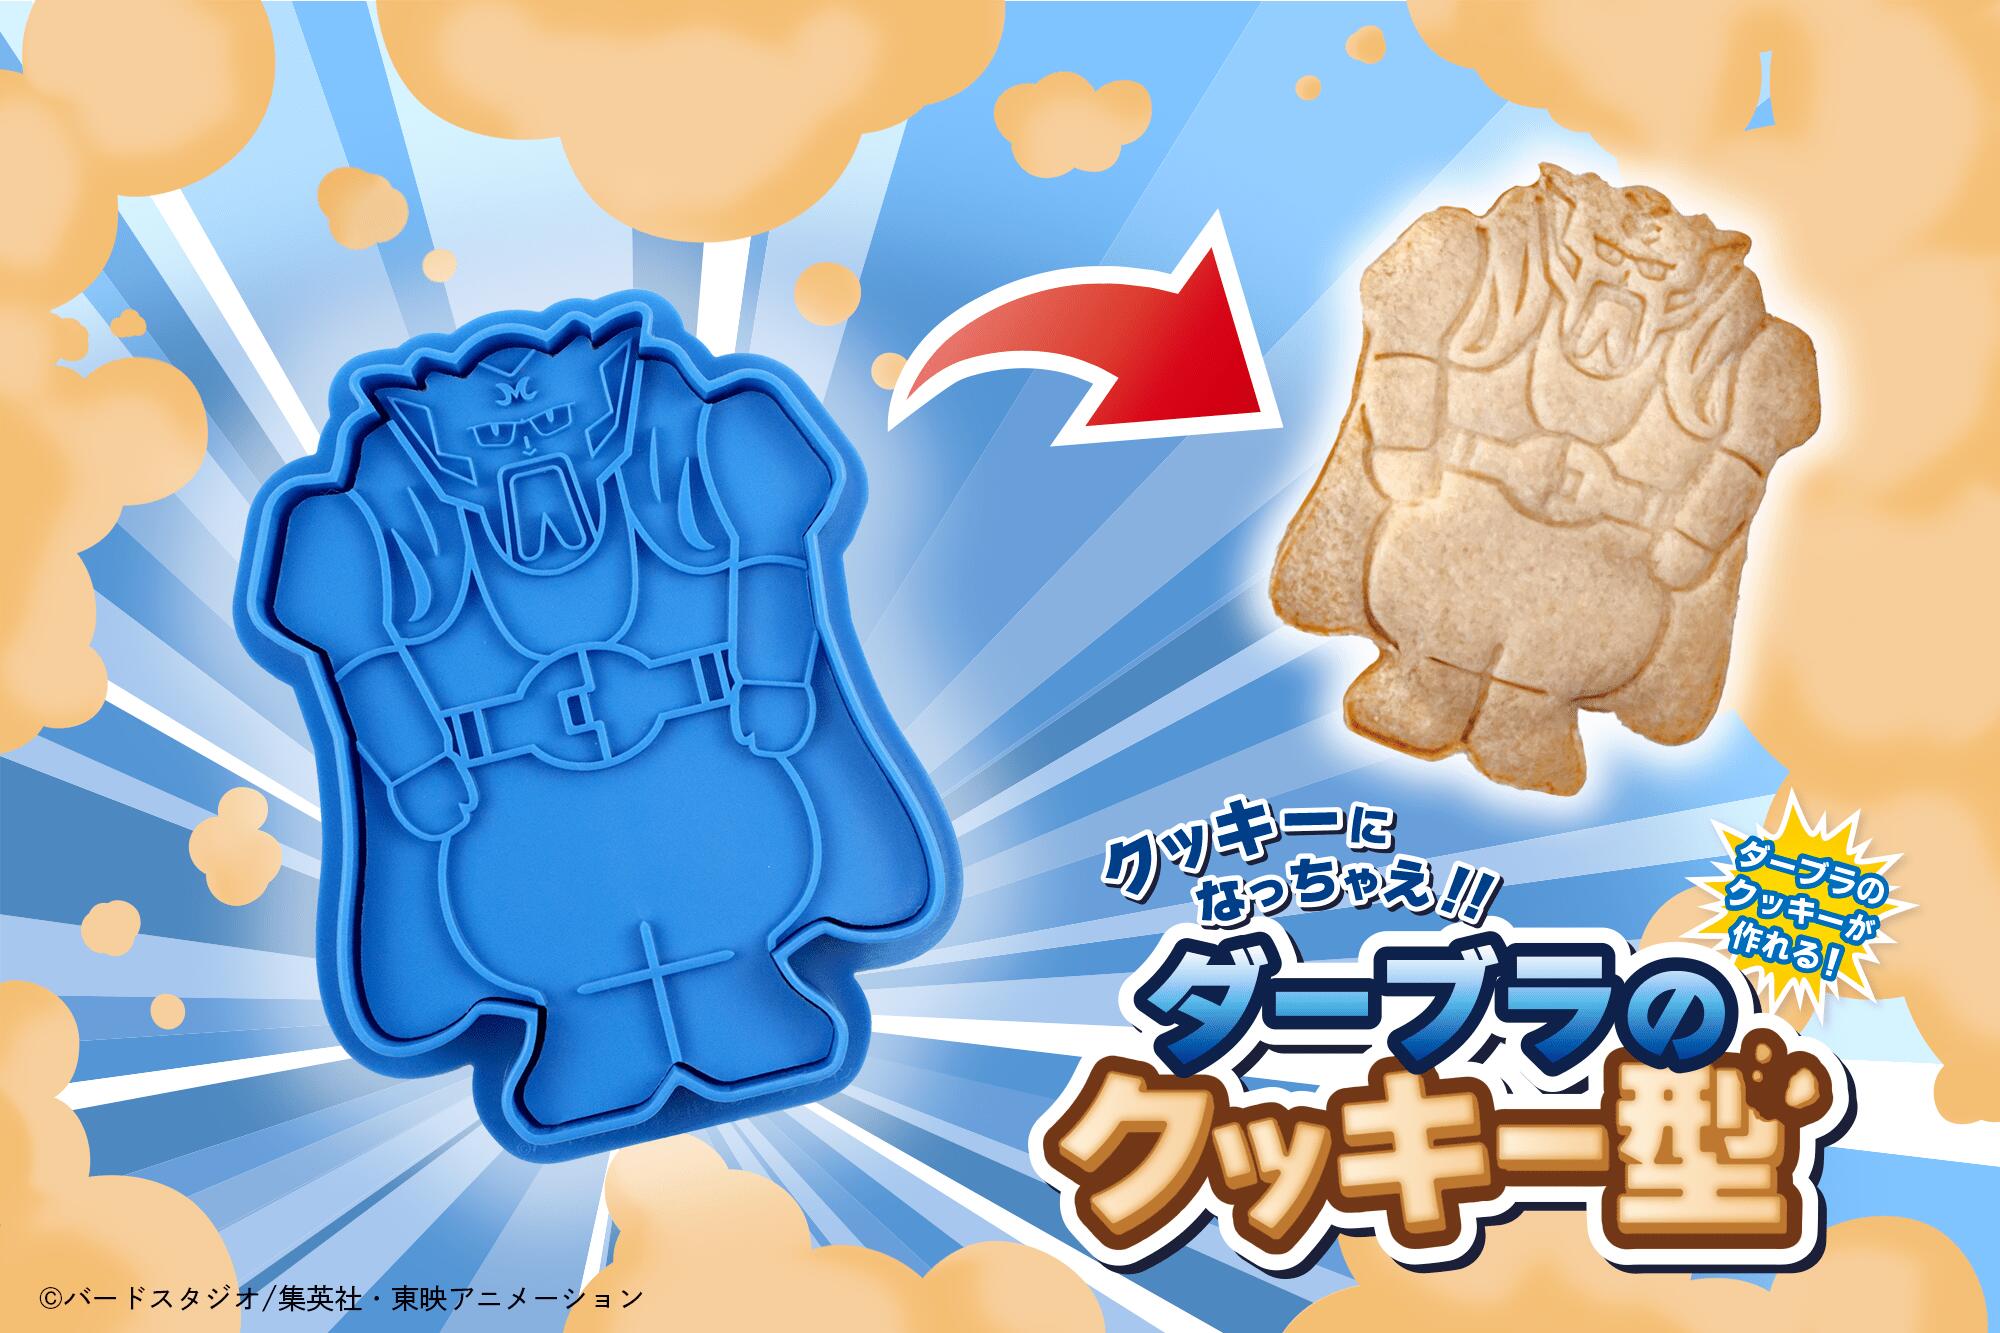 Dragon Ball Z - Cocina tus galletas oficiales de Dabra y Majin Buu con estos moldes de Bandai Namco